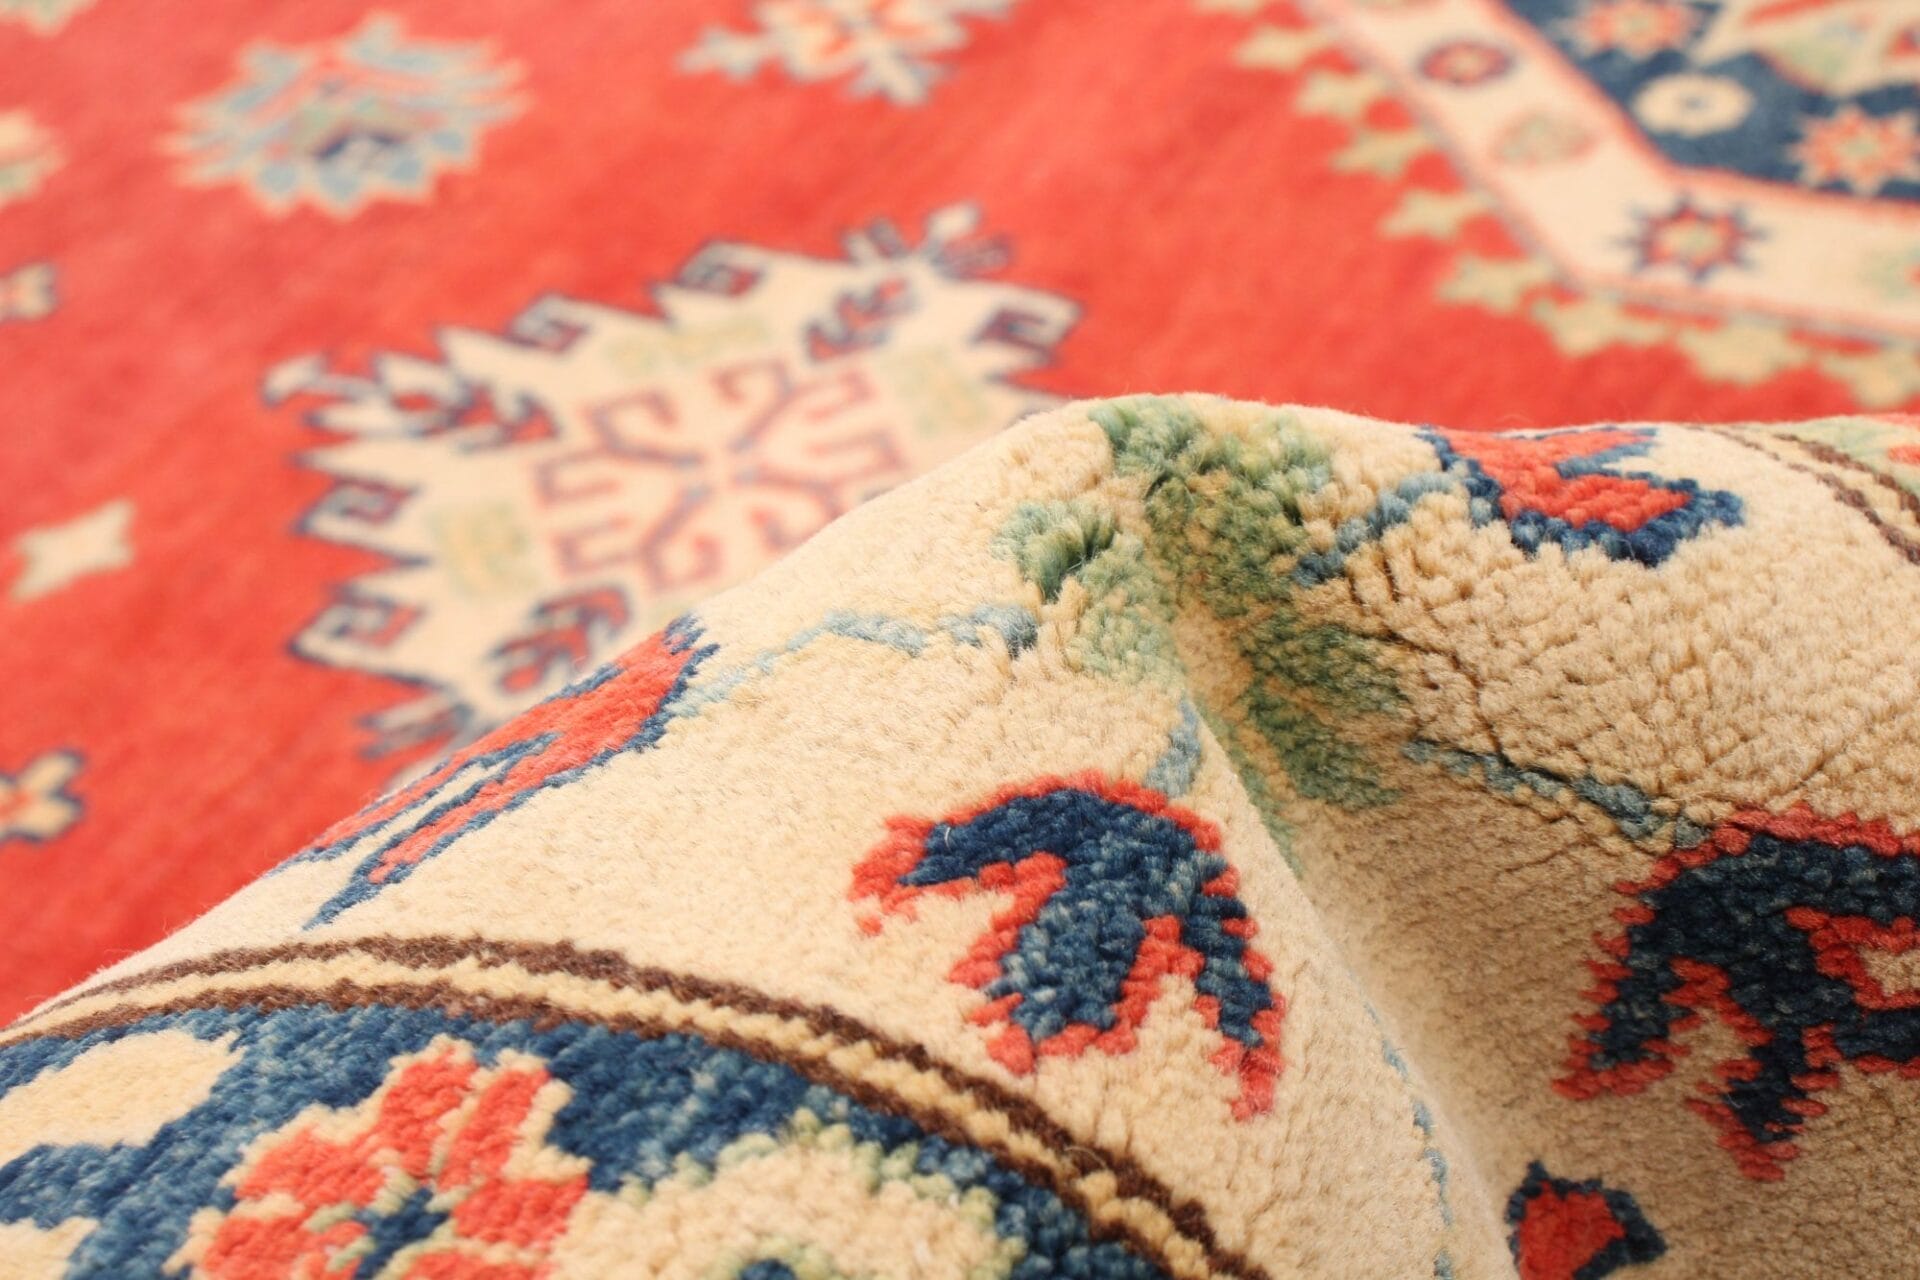 Een close-up van een rood en blauw vloerkleed/tapijt.